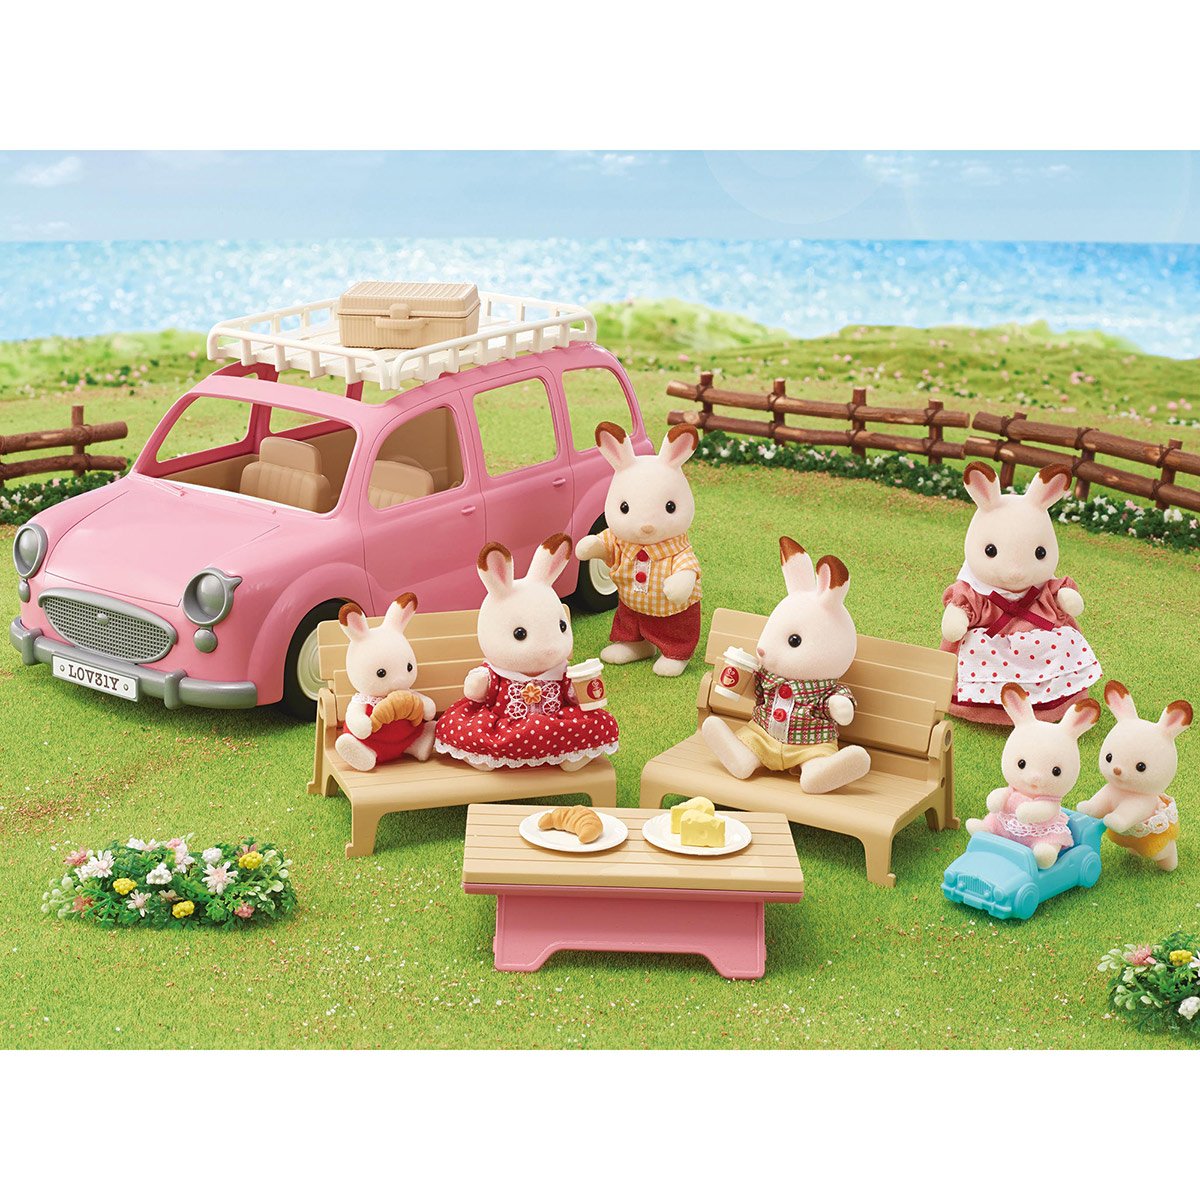 Le monospace rose et set de pique-nique - sylvanian vehicules, figurines